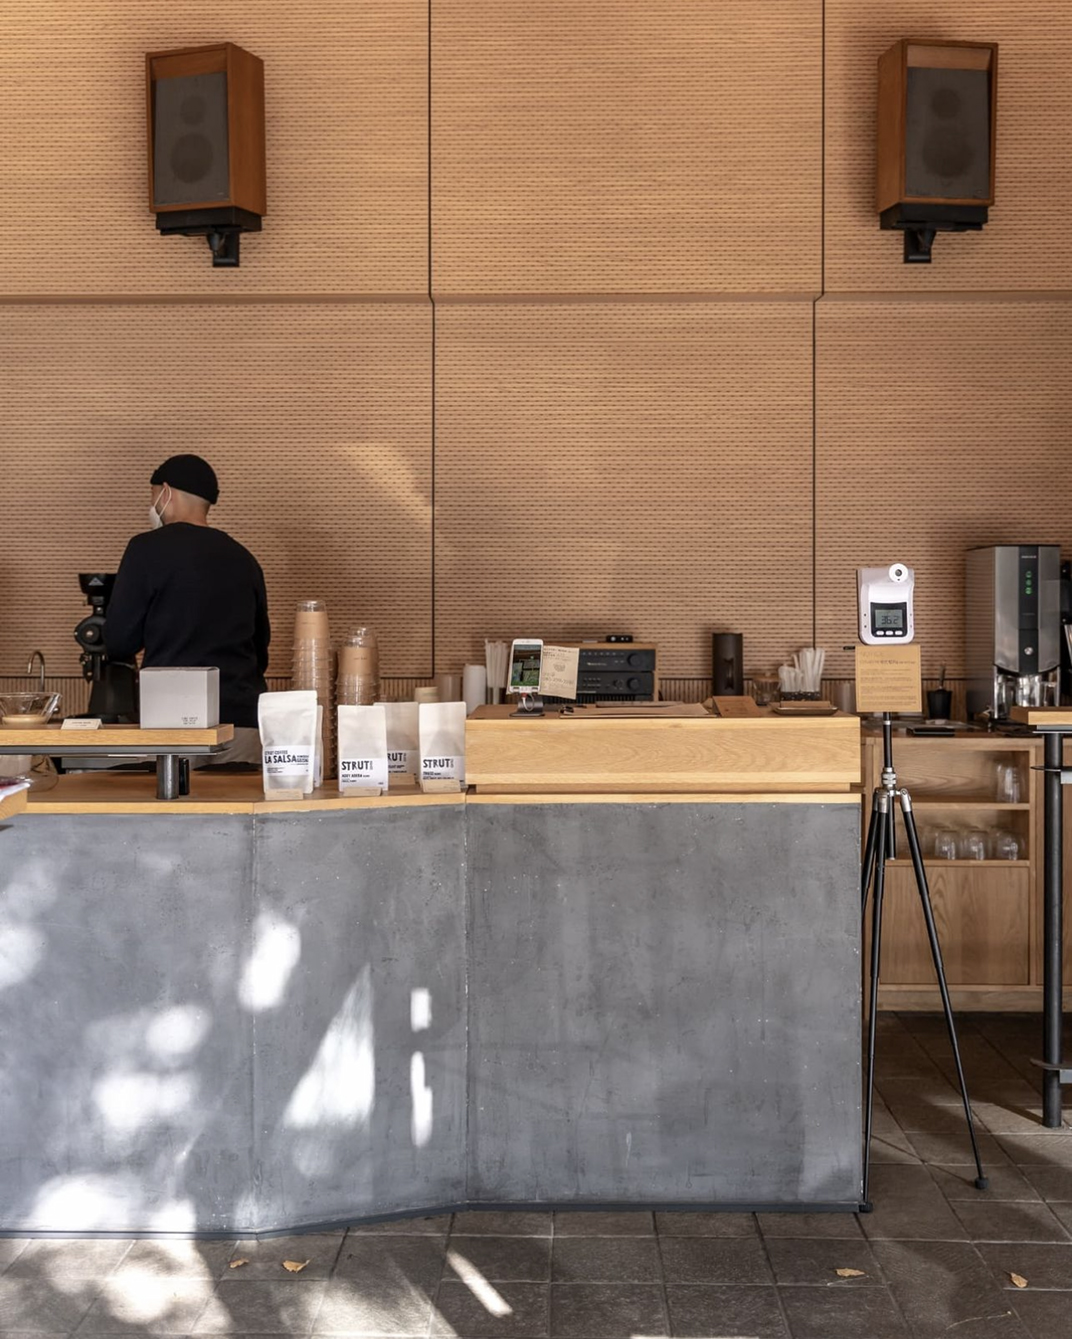 浅木色咖啡馆 带来的清新气息 韩国 釜山 上海 北京 广州 武汉 咖啡店 餐饮商业 logo设计 vi设计 空间设计